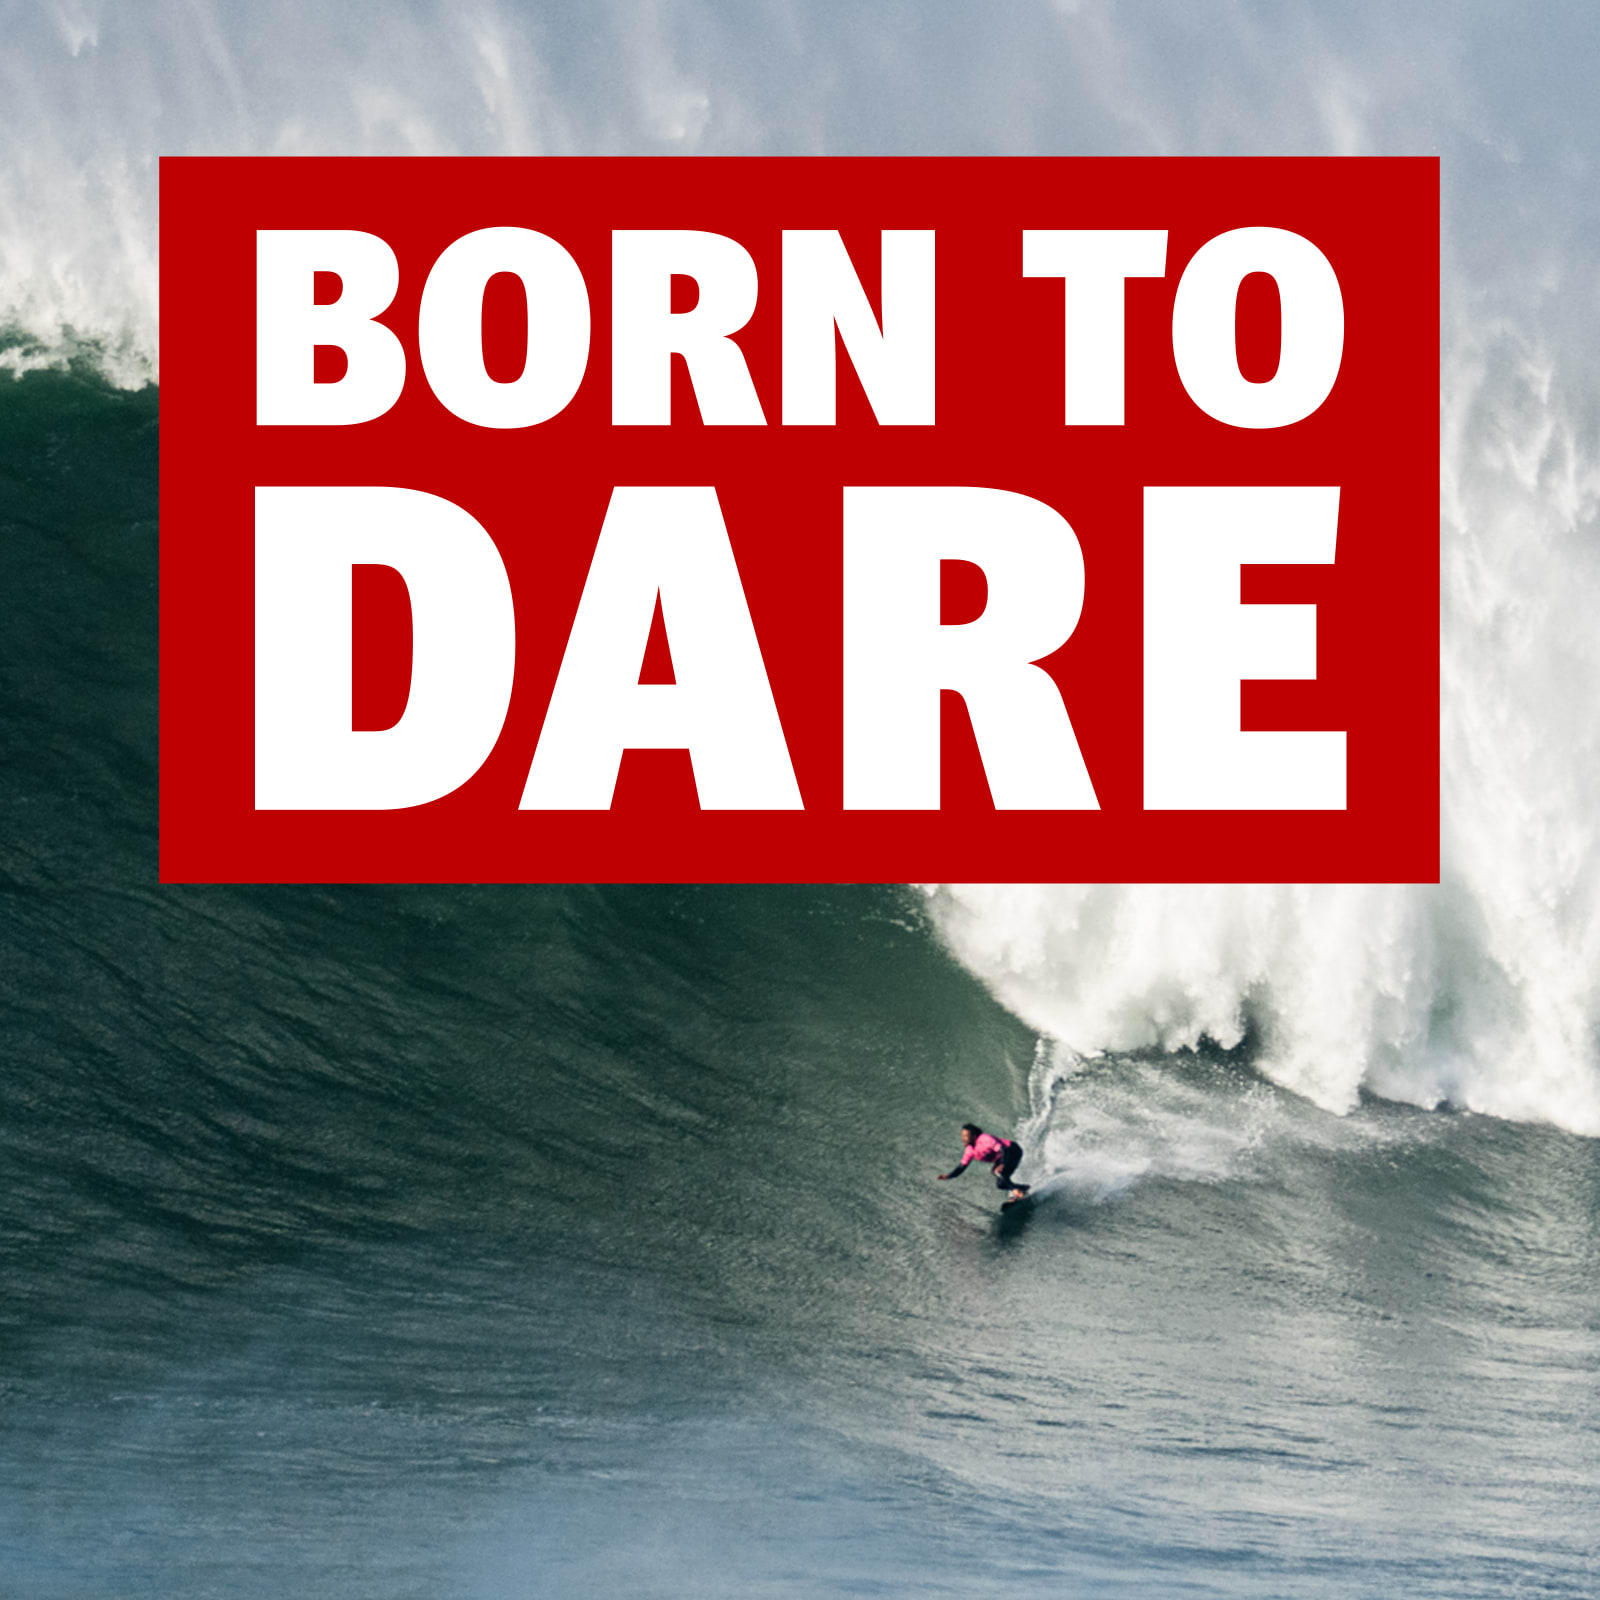 Born to dare logo